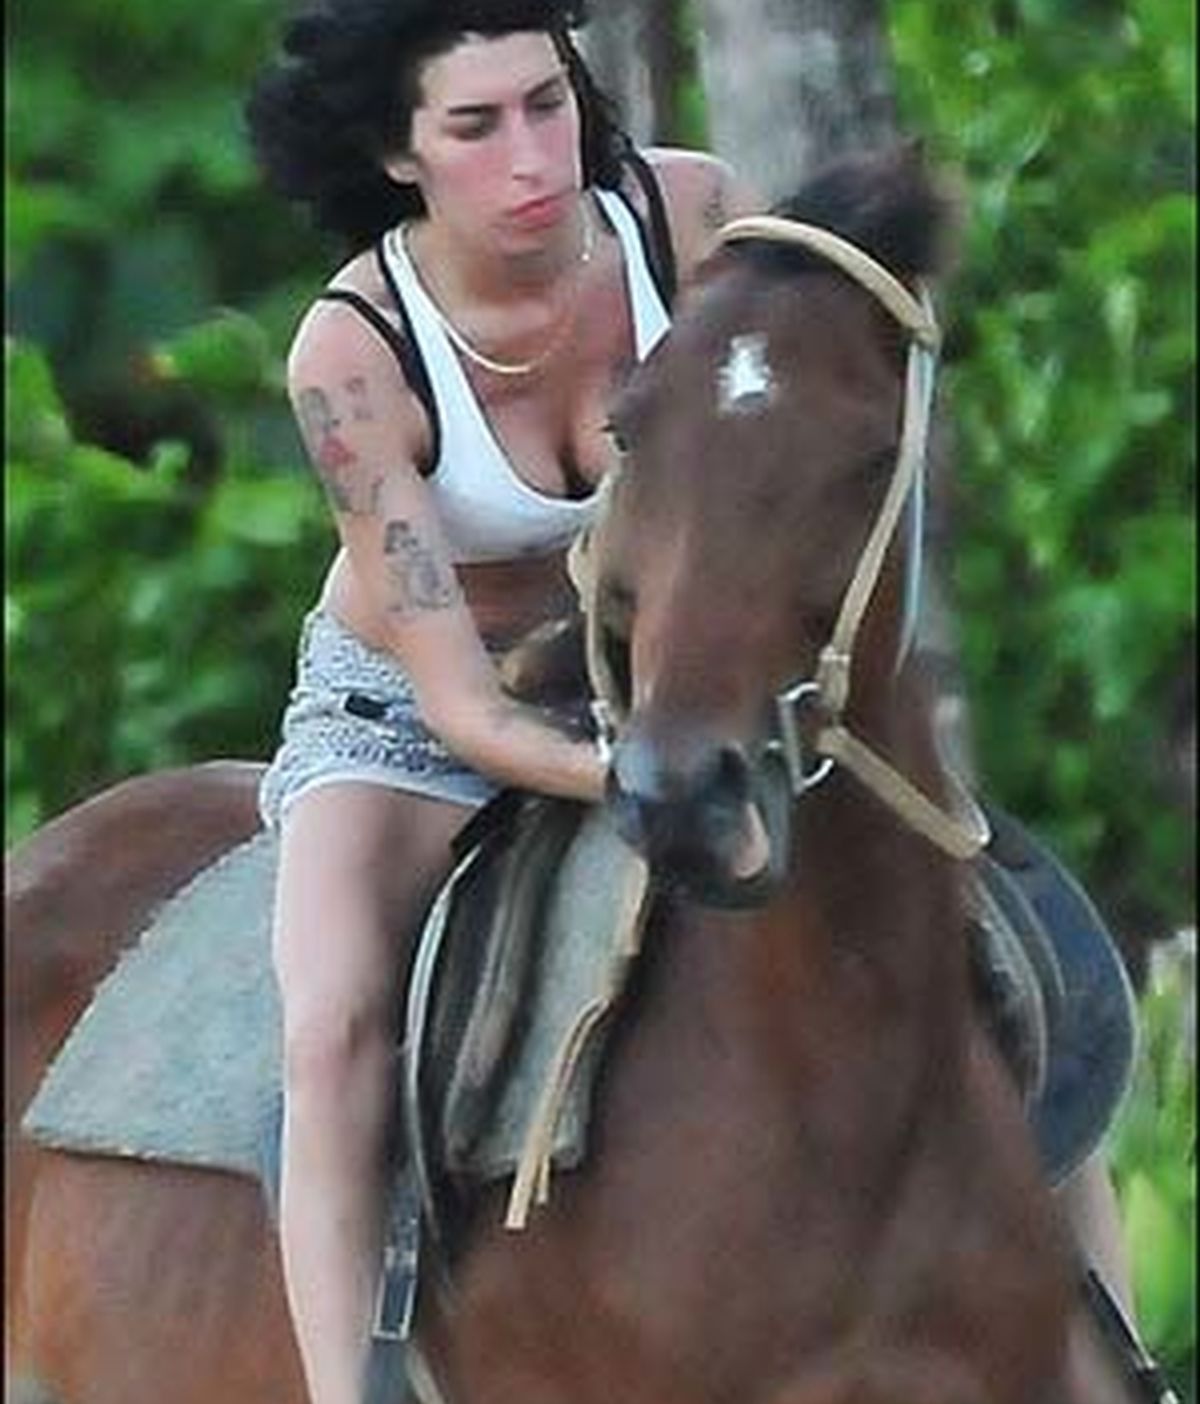 Amy Winehose encuentra su lado más salvaje montando a caballo en Santa Lucía. Foto: The Sun